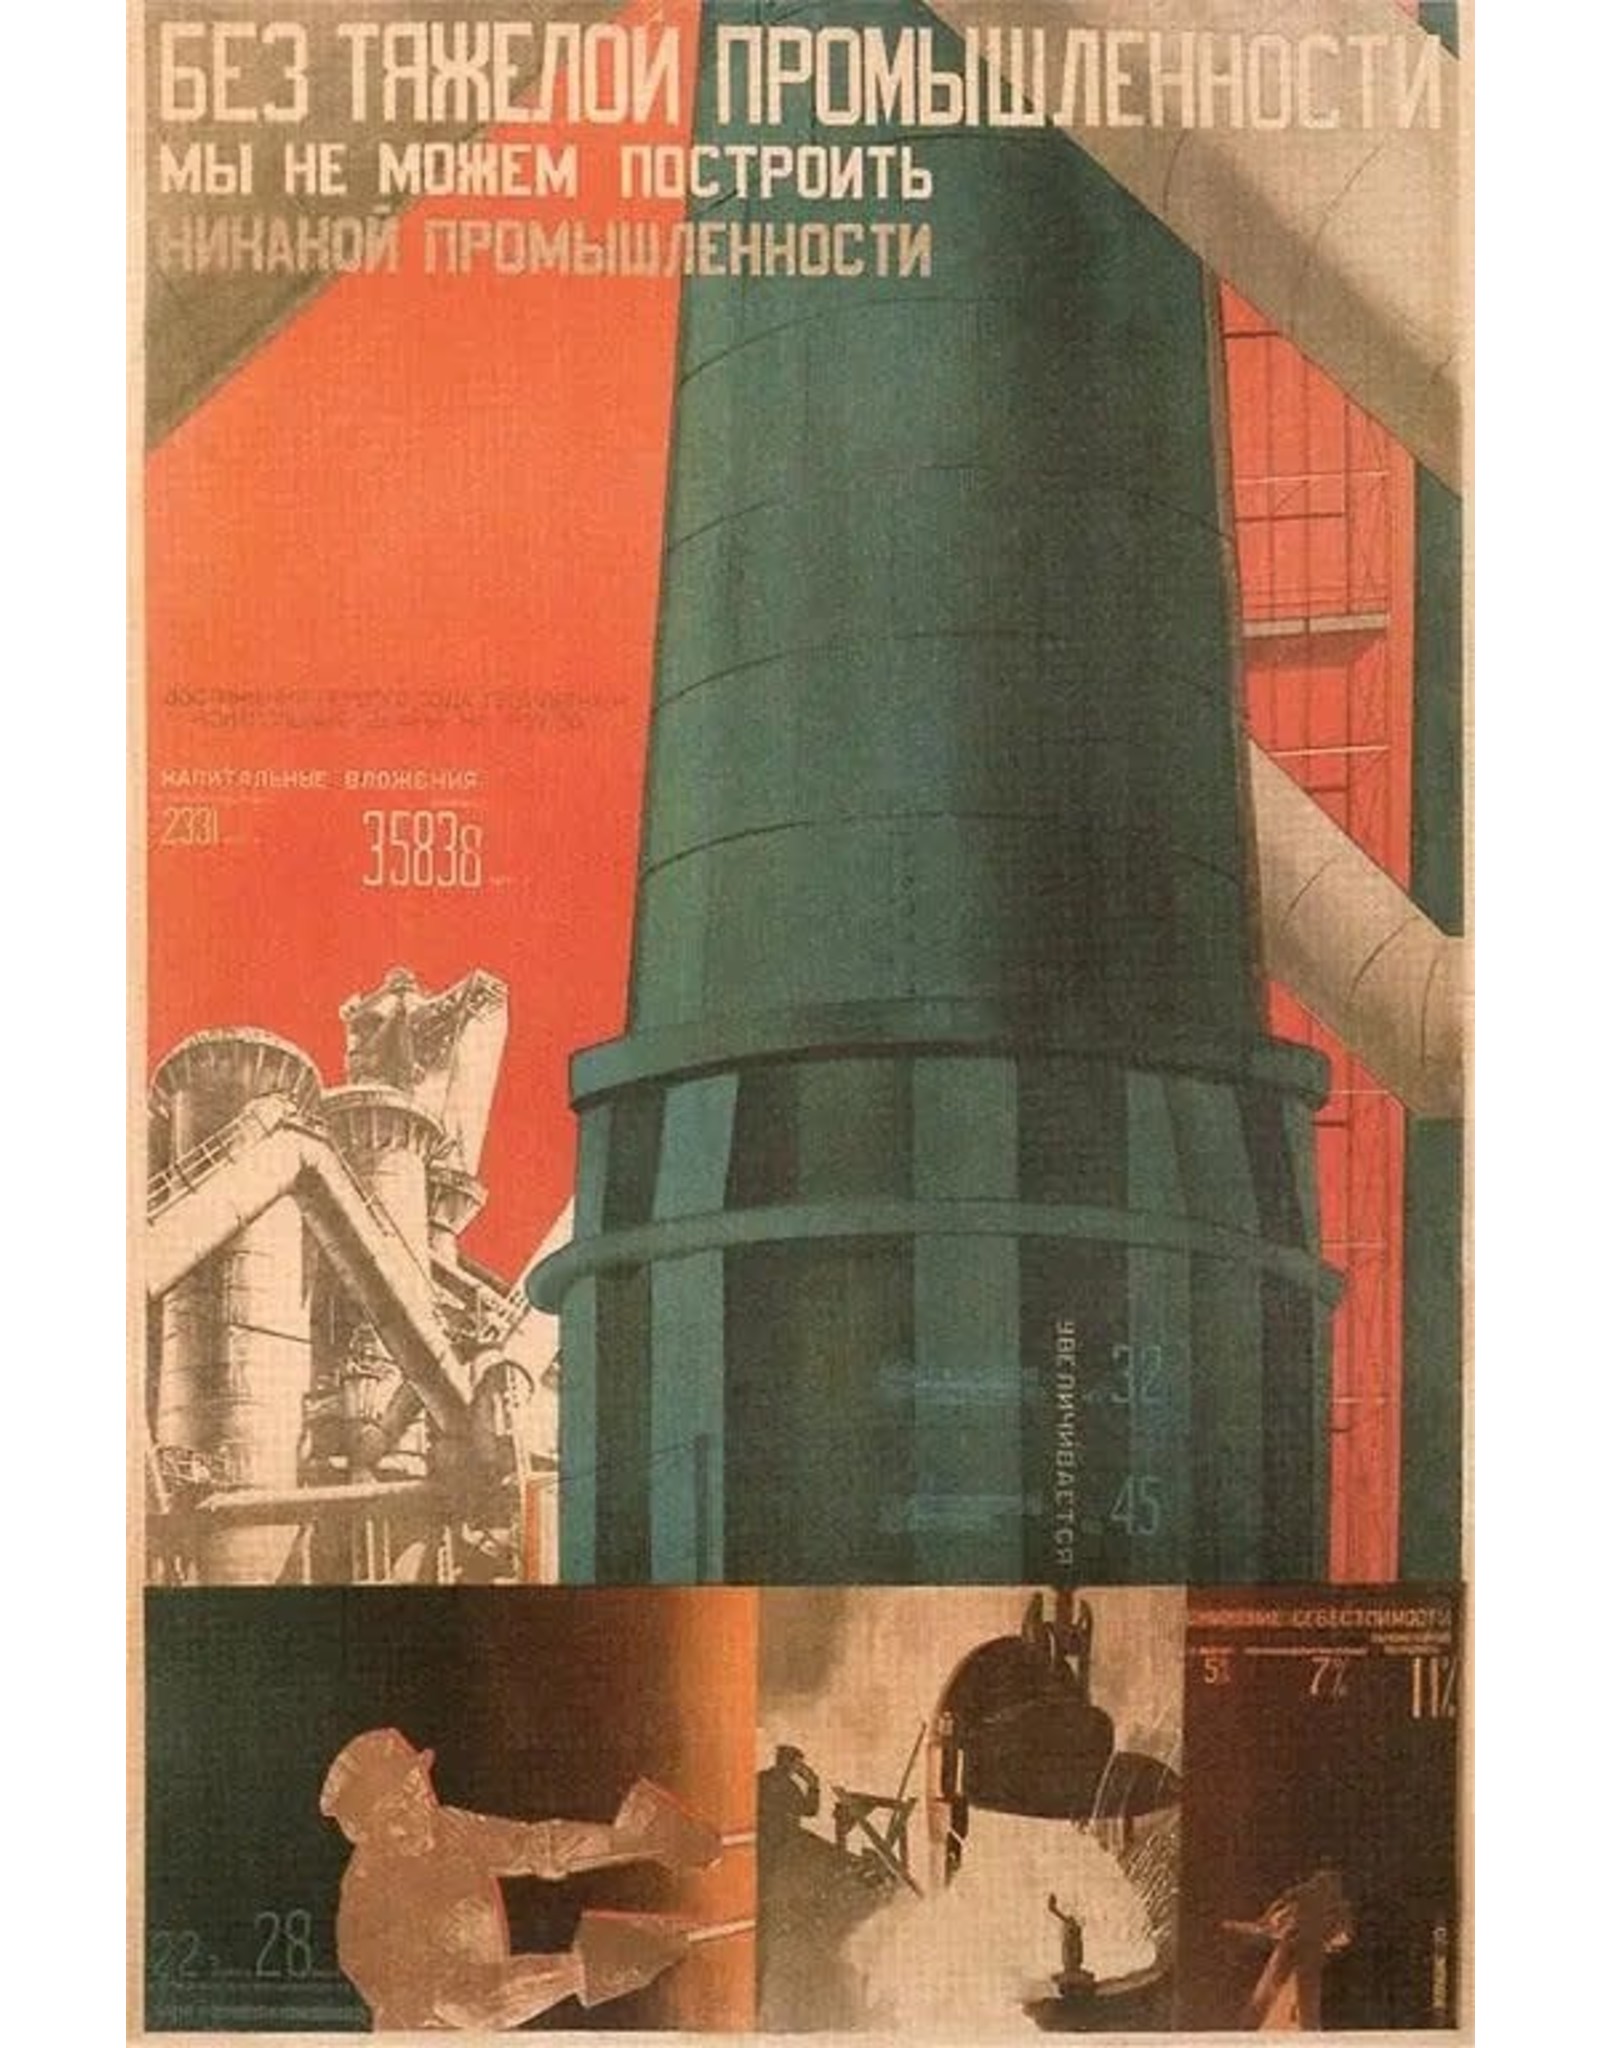 Soviet Heavy Industry Magnet